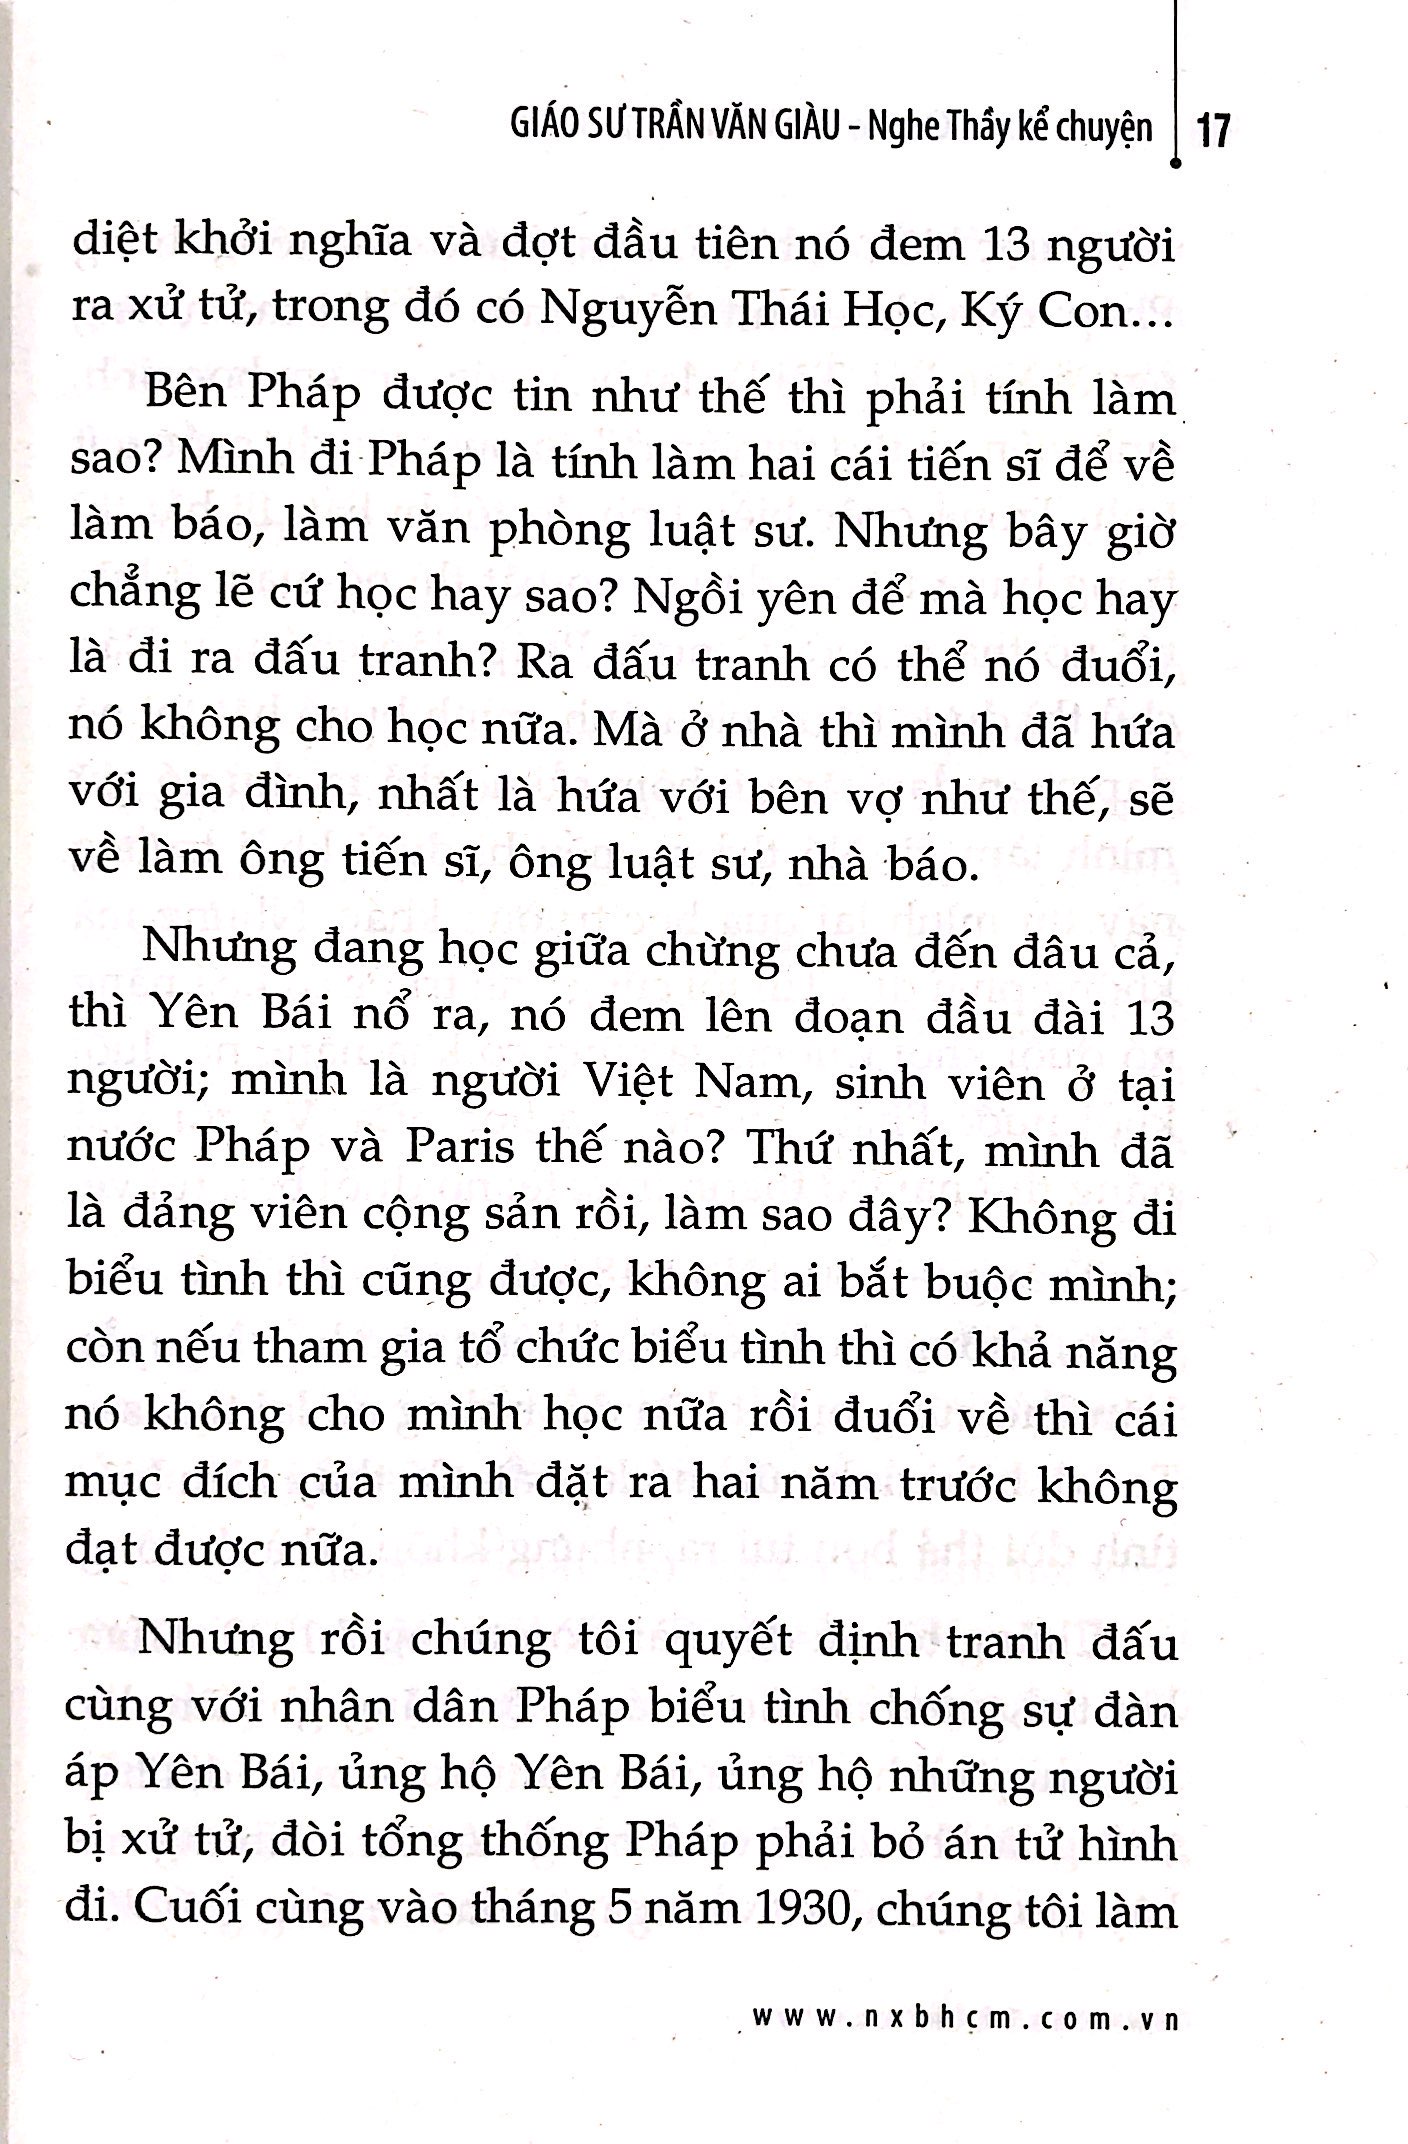 Nghe Thầy Kể Chuyện - Giáo Sư Trần Văn Giàu PDF